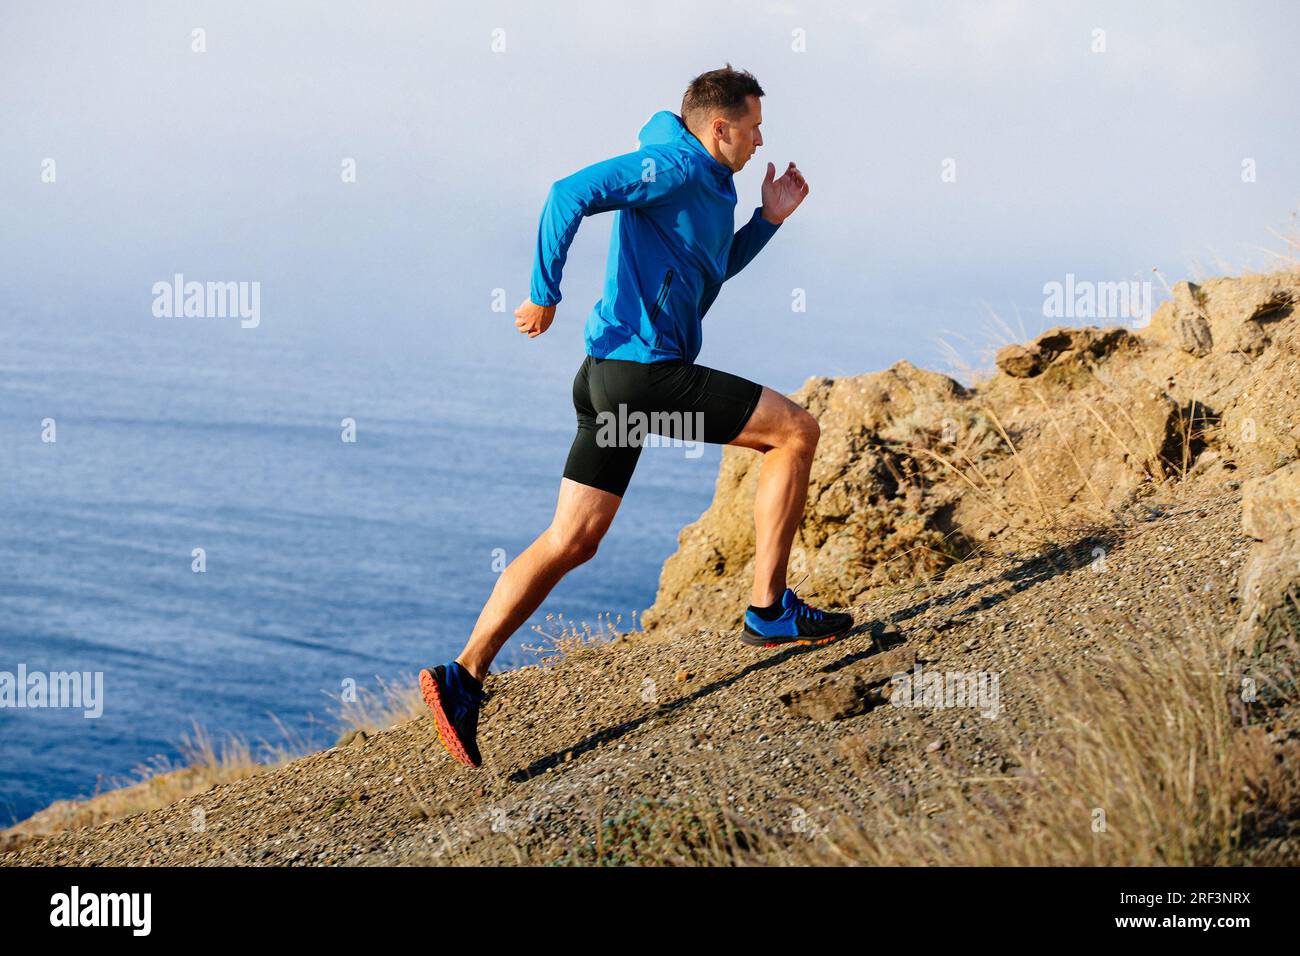 atleta runner che corre in montagna in salita con giacca blu e tights neri, sfondo di mare Foto Stock